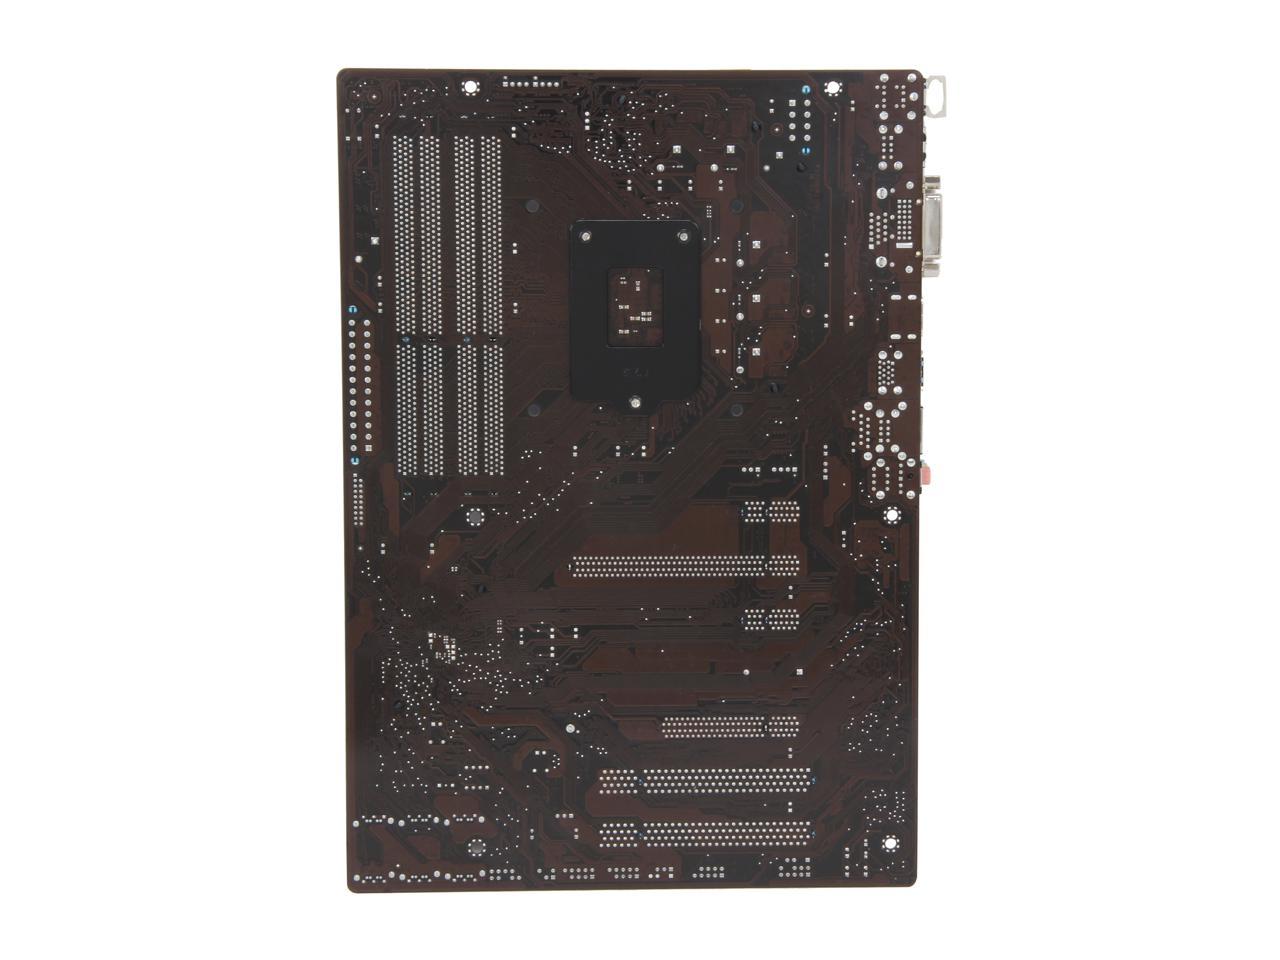 ASUS Z77-A LGA 1155 Intel Z77 HDMI SATA 6Gb/s USB 3.0 ATX Intel Motherboard